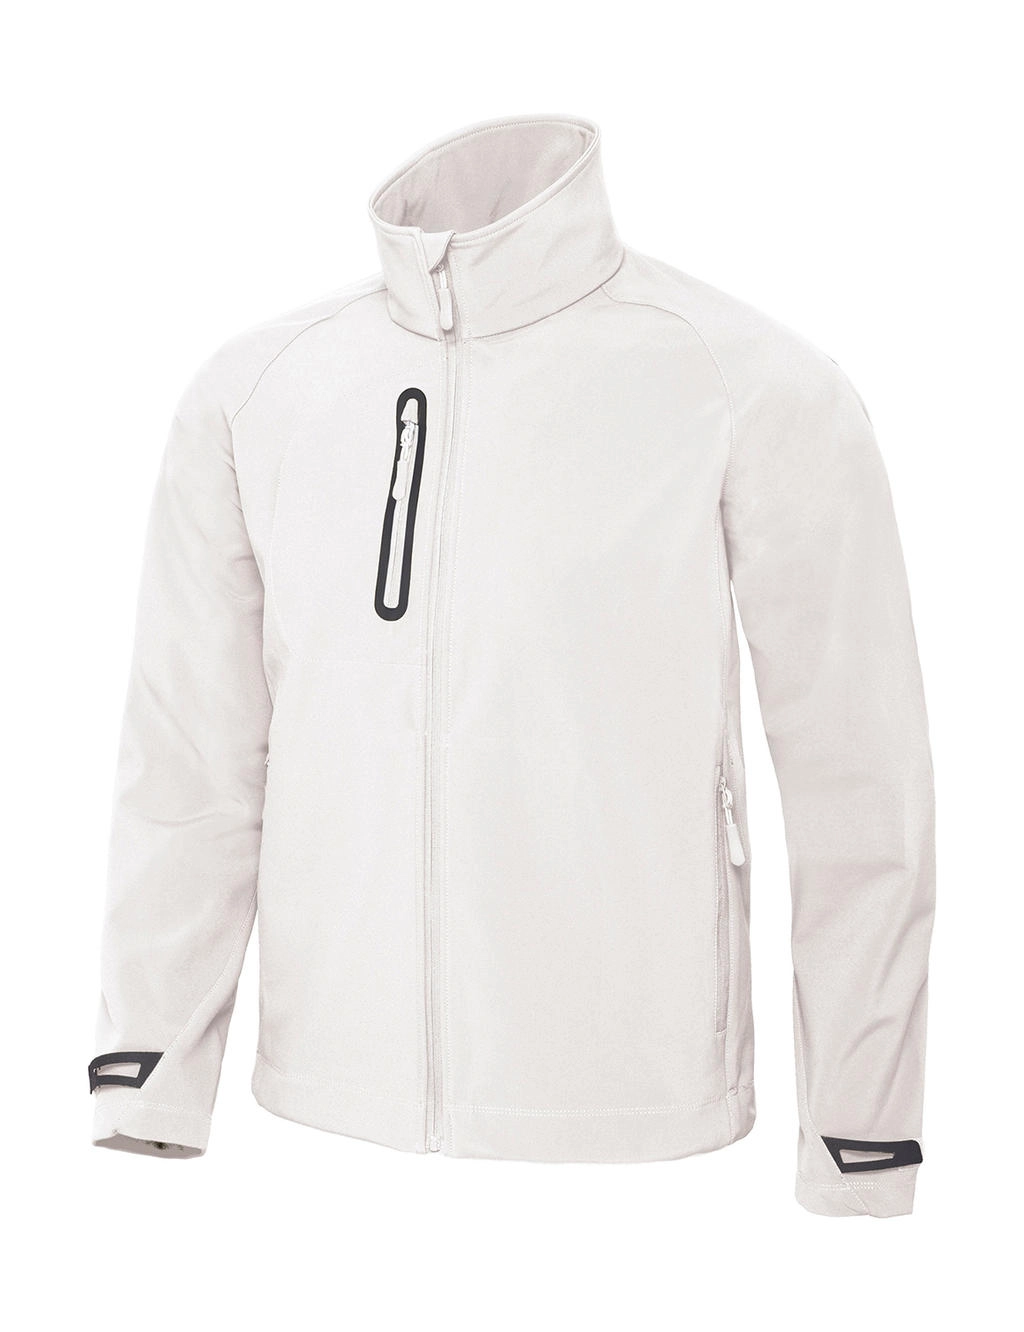 X-Lite Softshell/men Jacket zum Besticken und Bedrucken in der Farbe White mit Ihren Logo, Schriftzug oder Motiv.